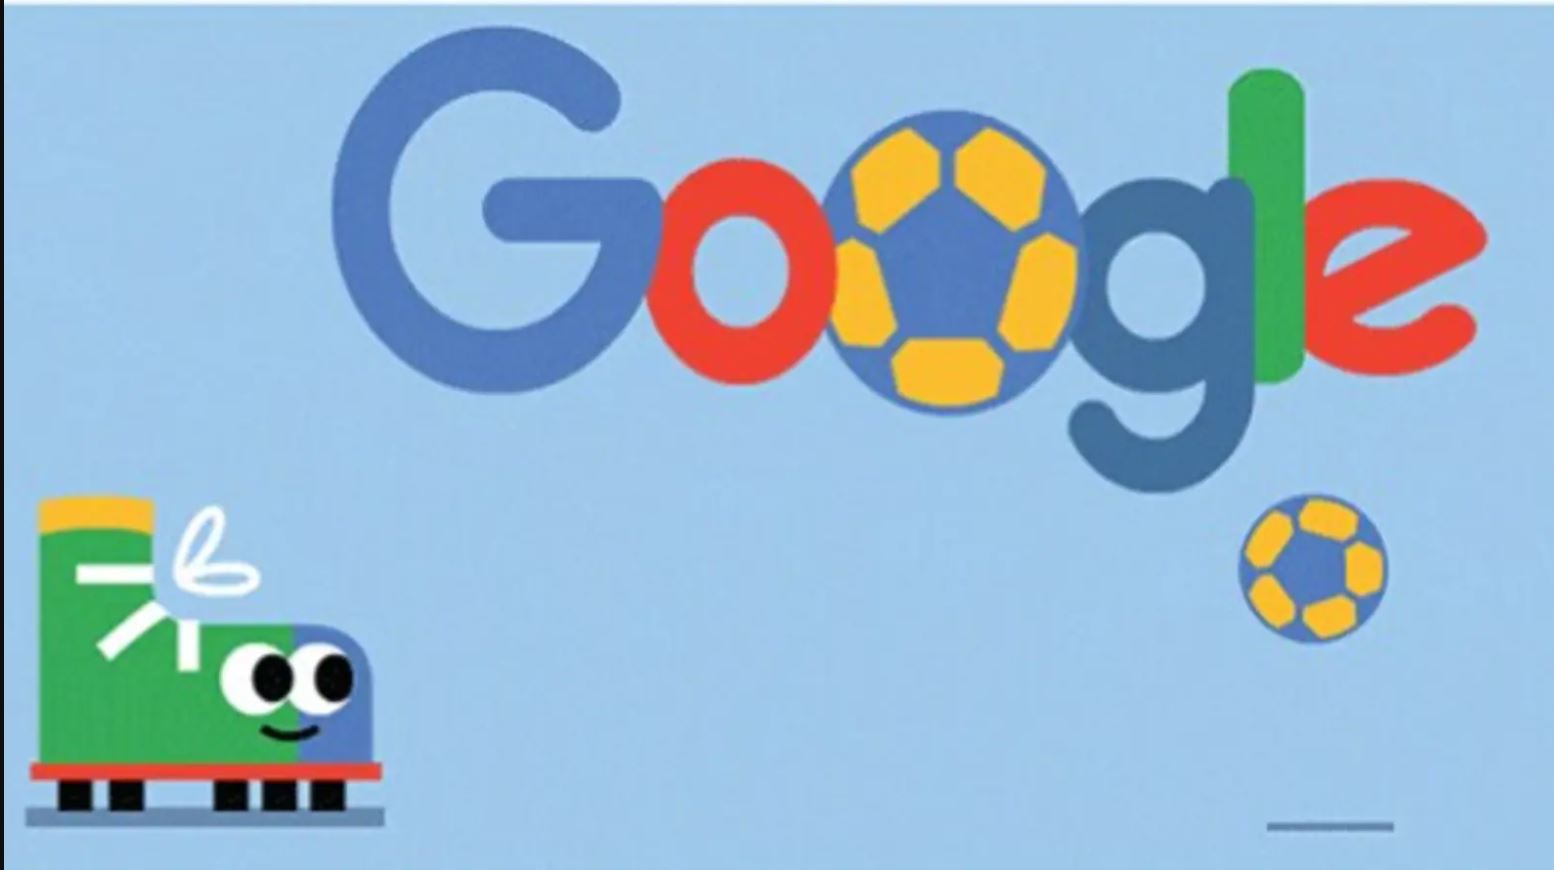 Το Google Doodle για την έναρξη του Μουντιάλ